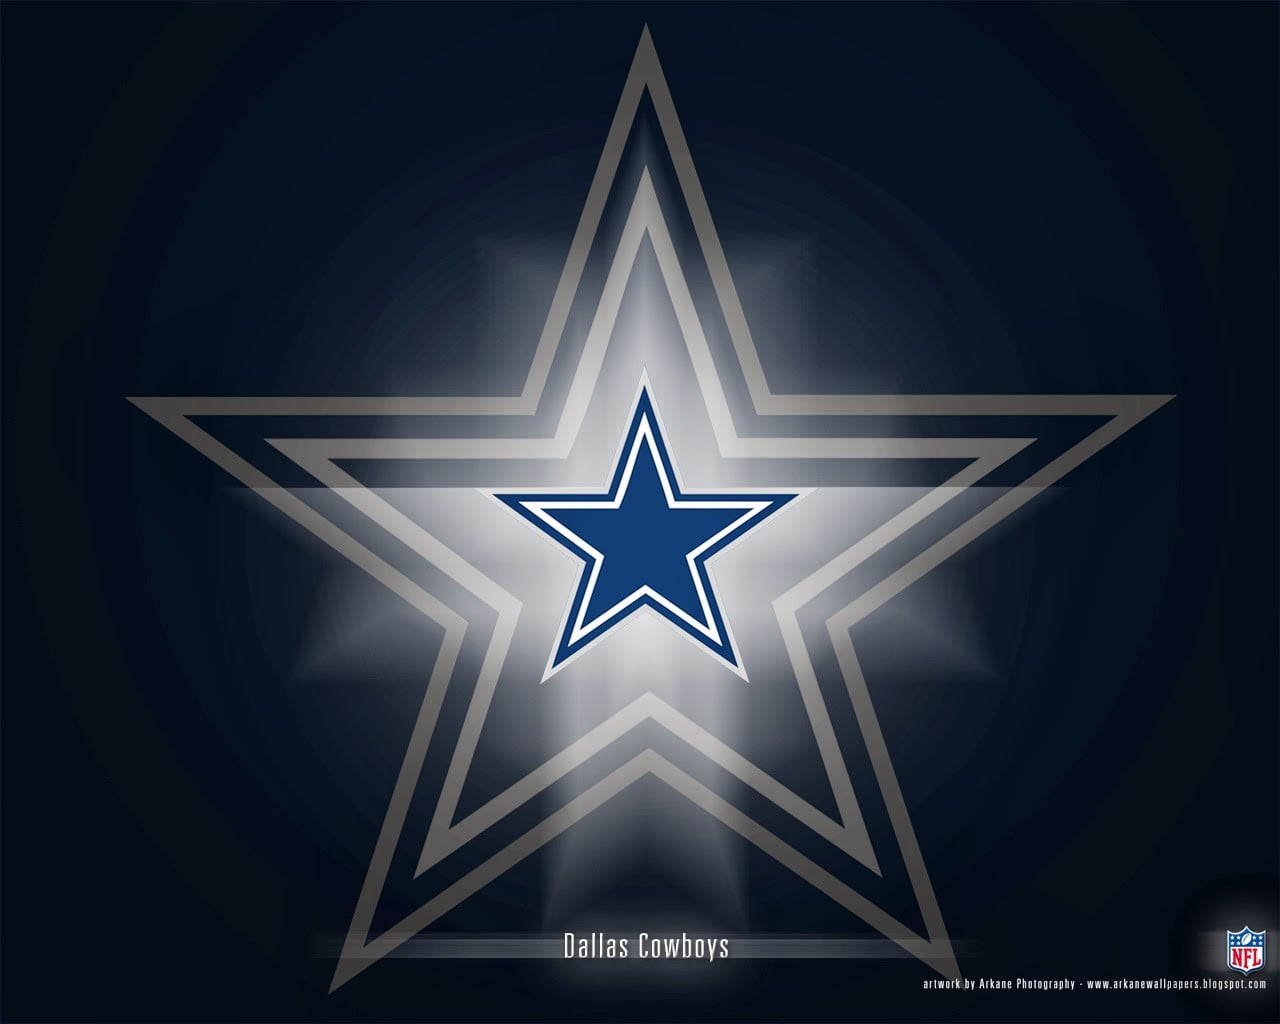 Dallas Cowboys logo, Dallas Cowboys, NFL, American football